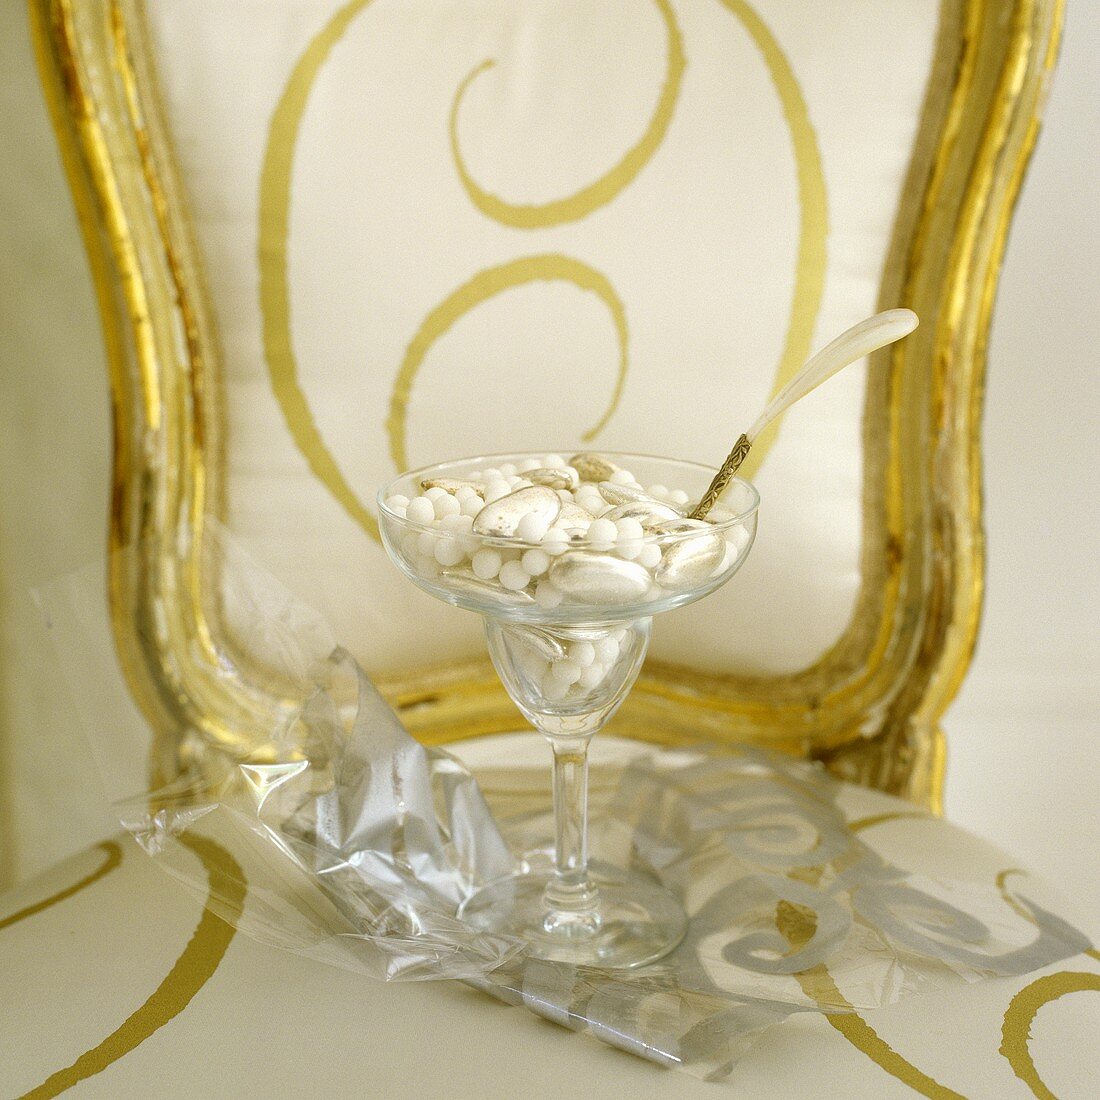 Stielglas mit Perlen, Muscheln und Löffel auf Stuhl mit Goldrahmen